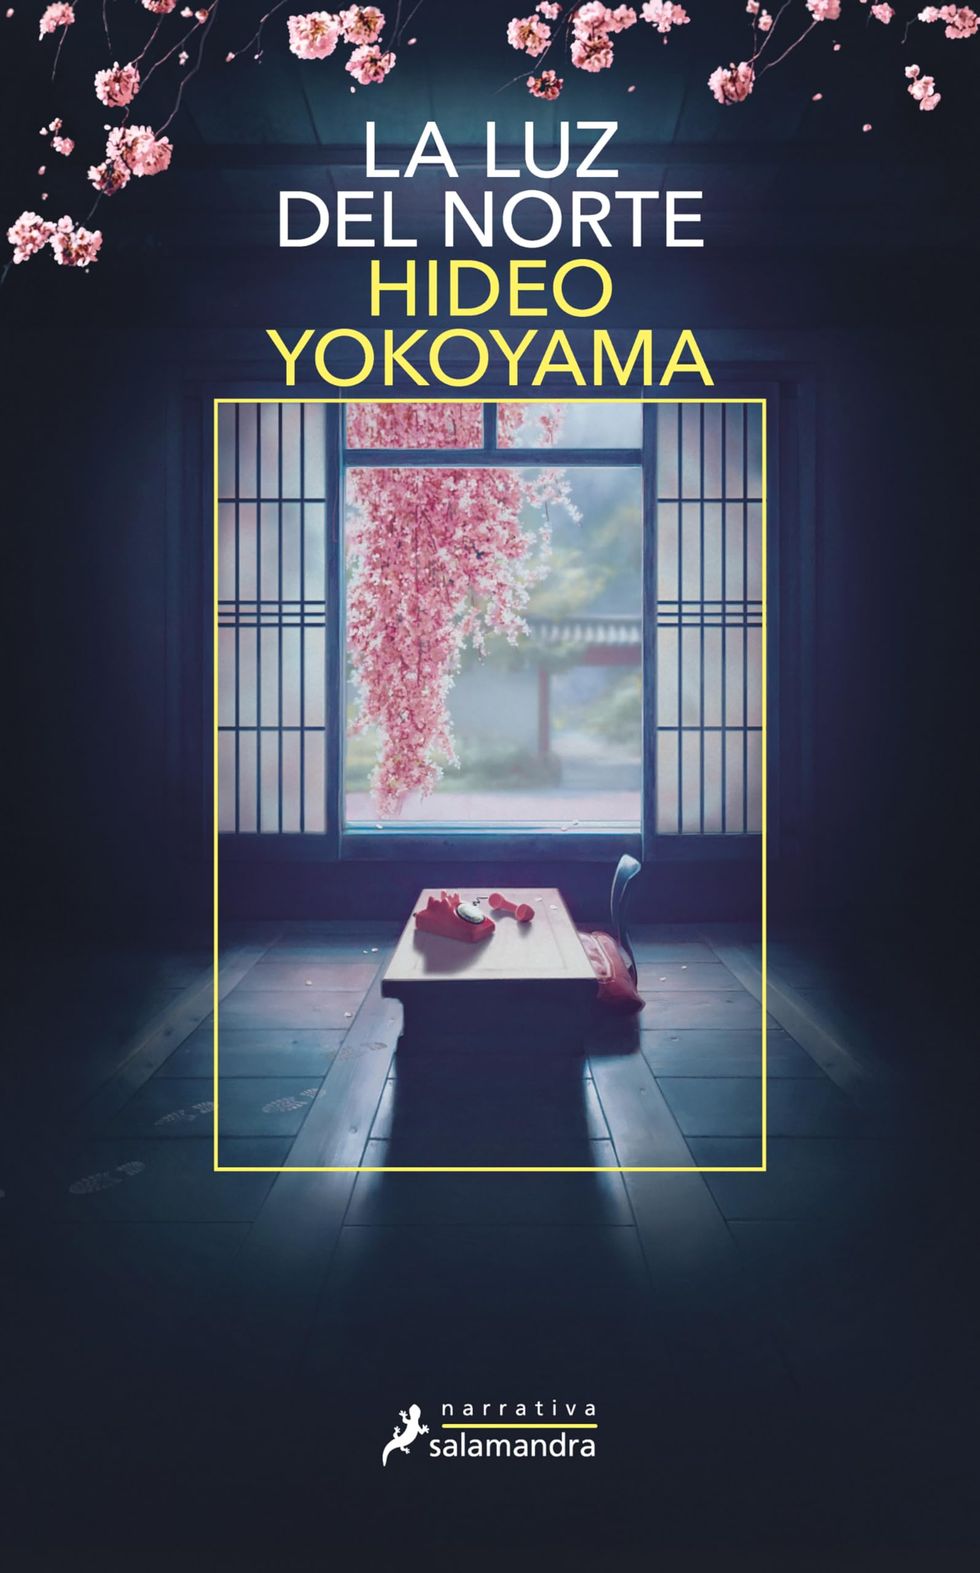 'La luz del norte' de Hideo Yokoyama [21 de marzo]